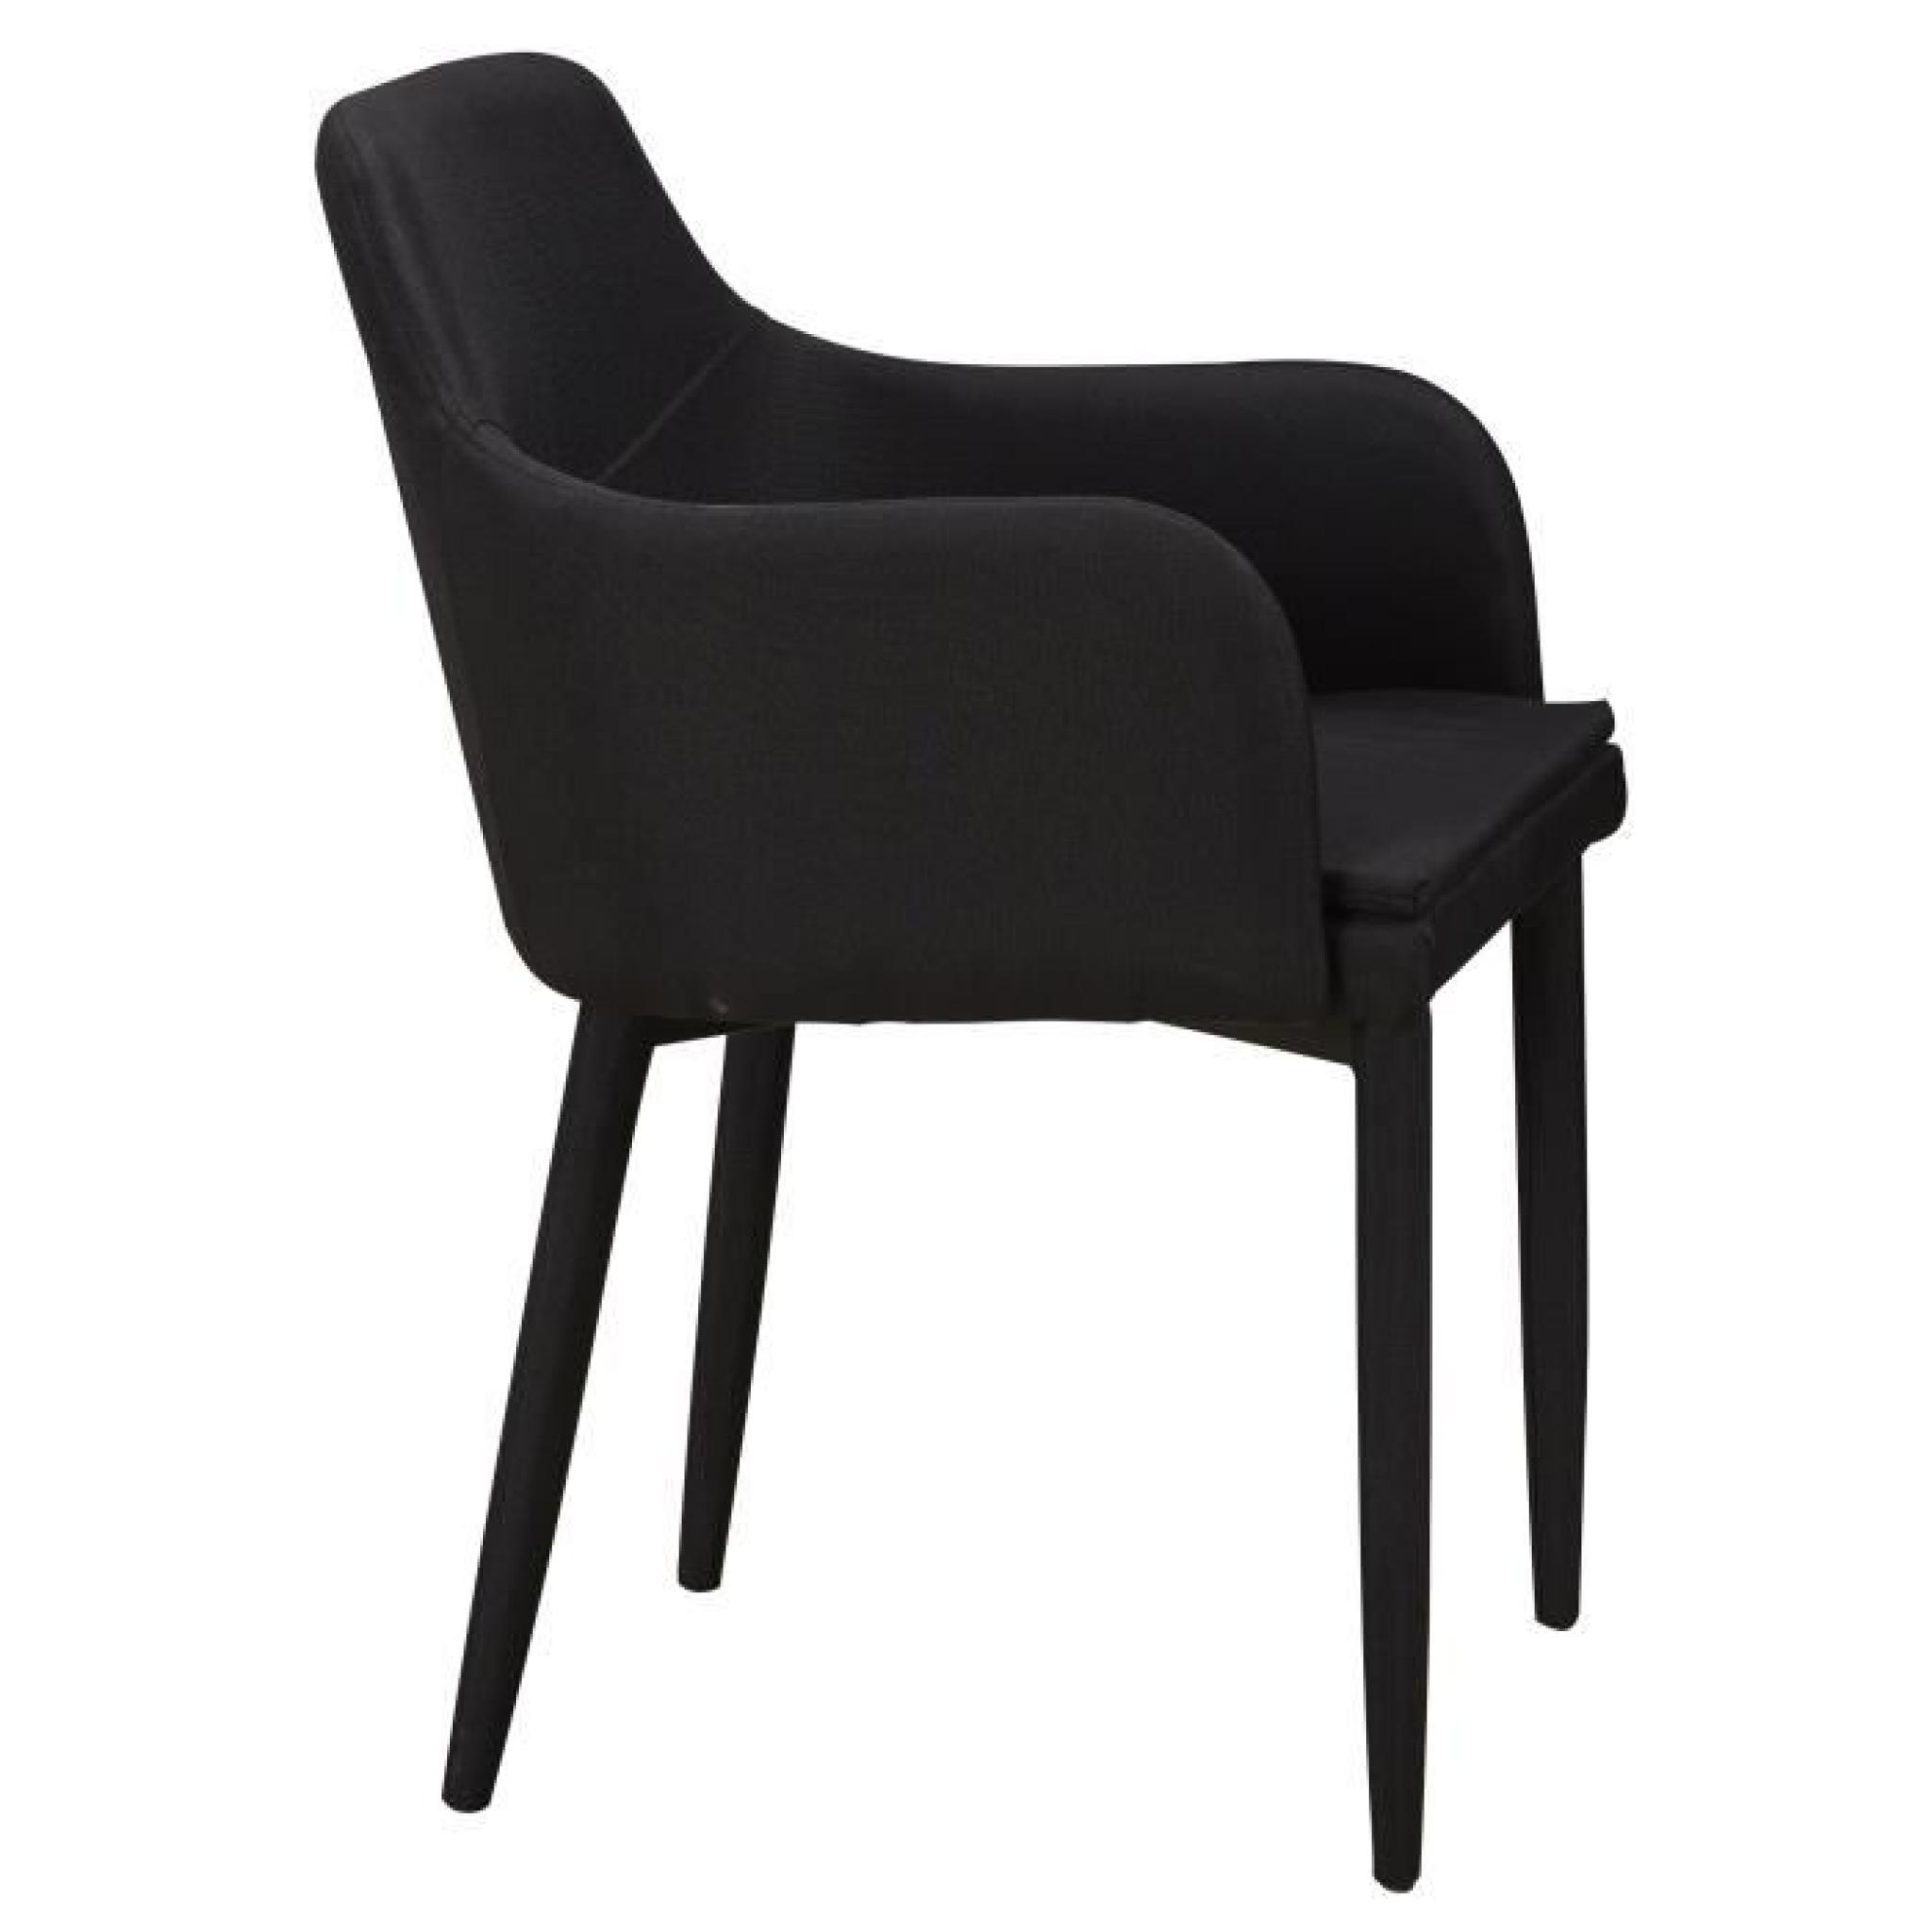 Chaise en tissus design avec accoudoirs coloris noir pas cher